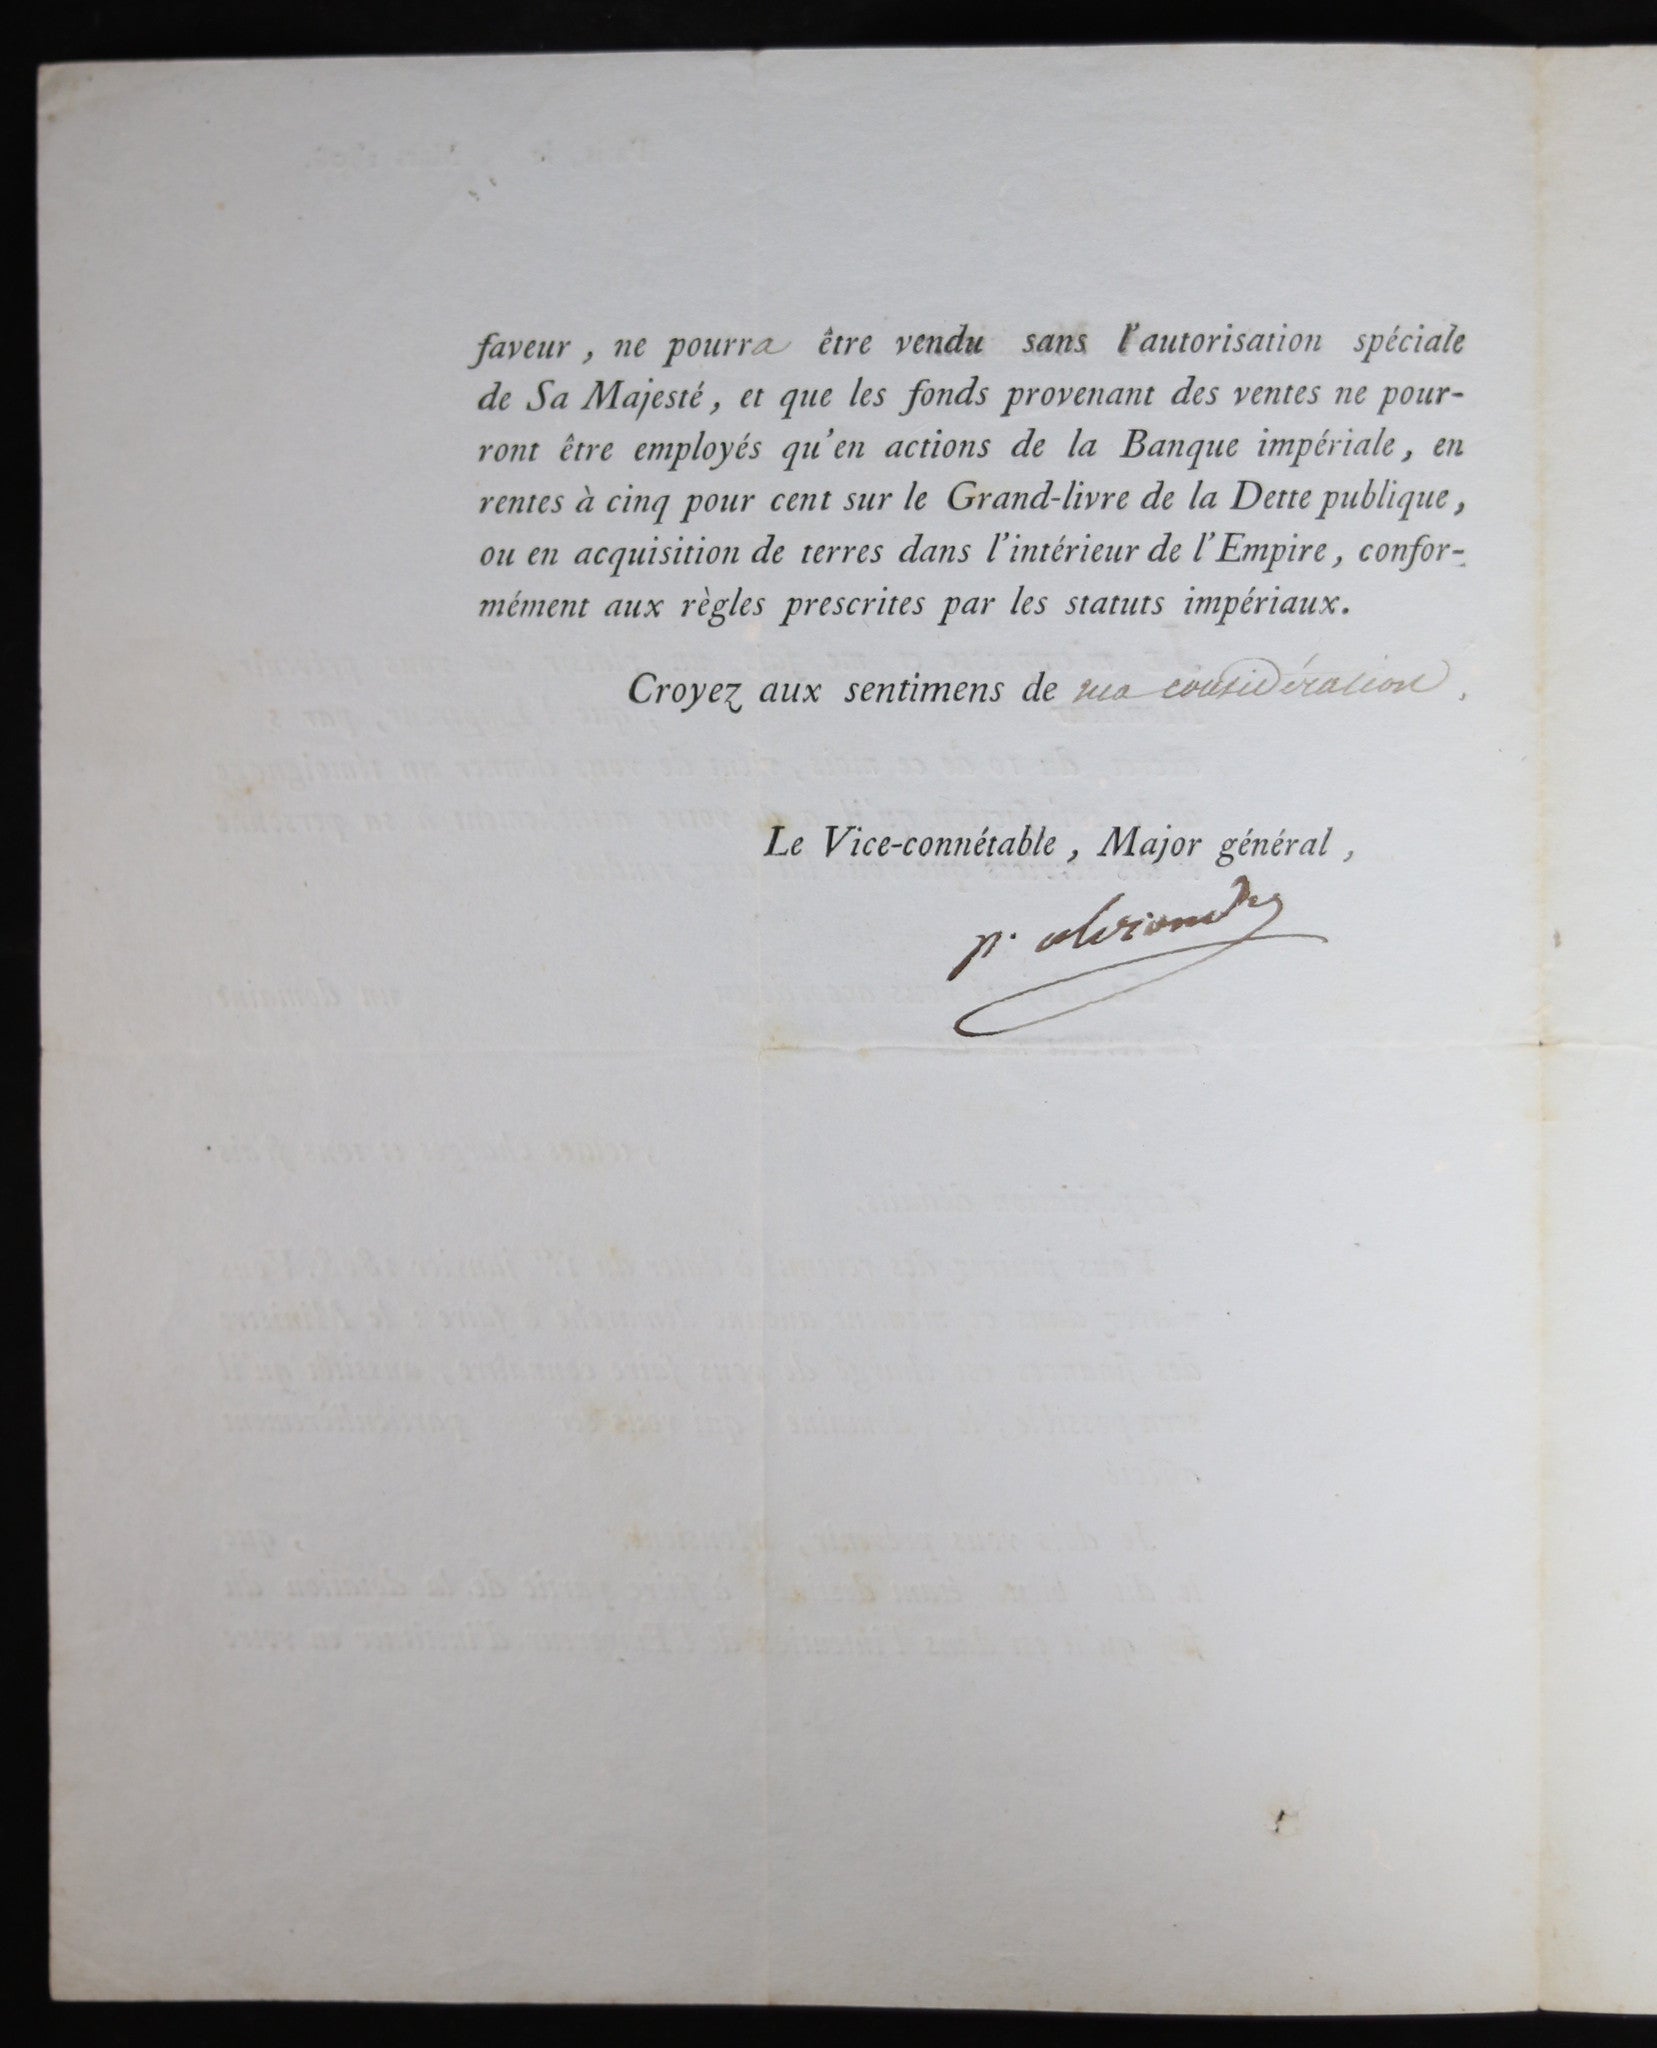 1808 Empire, dotation de Napoléon, signé par Berthier prince de Wagram